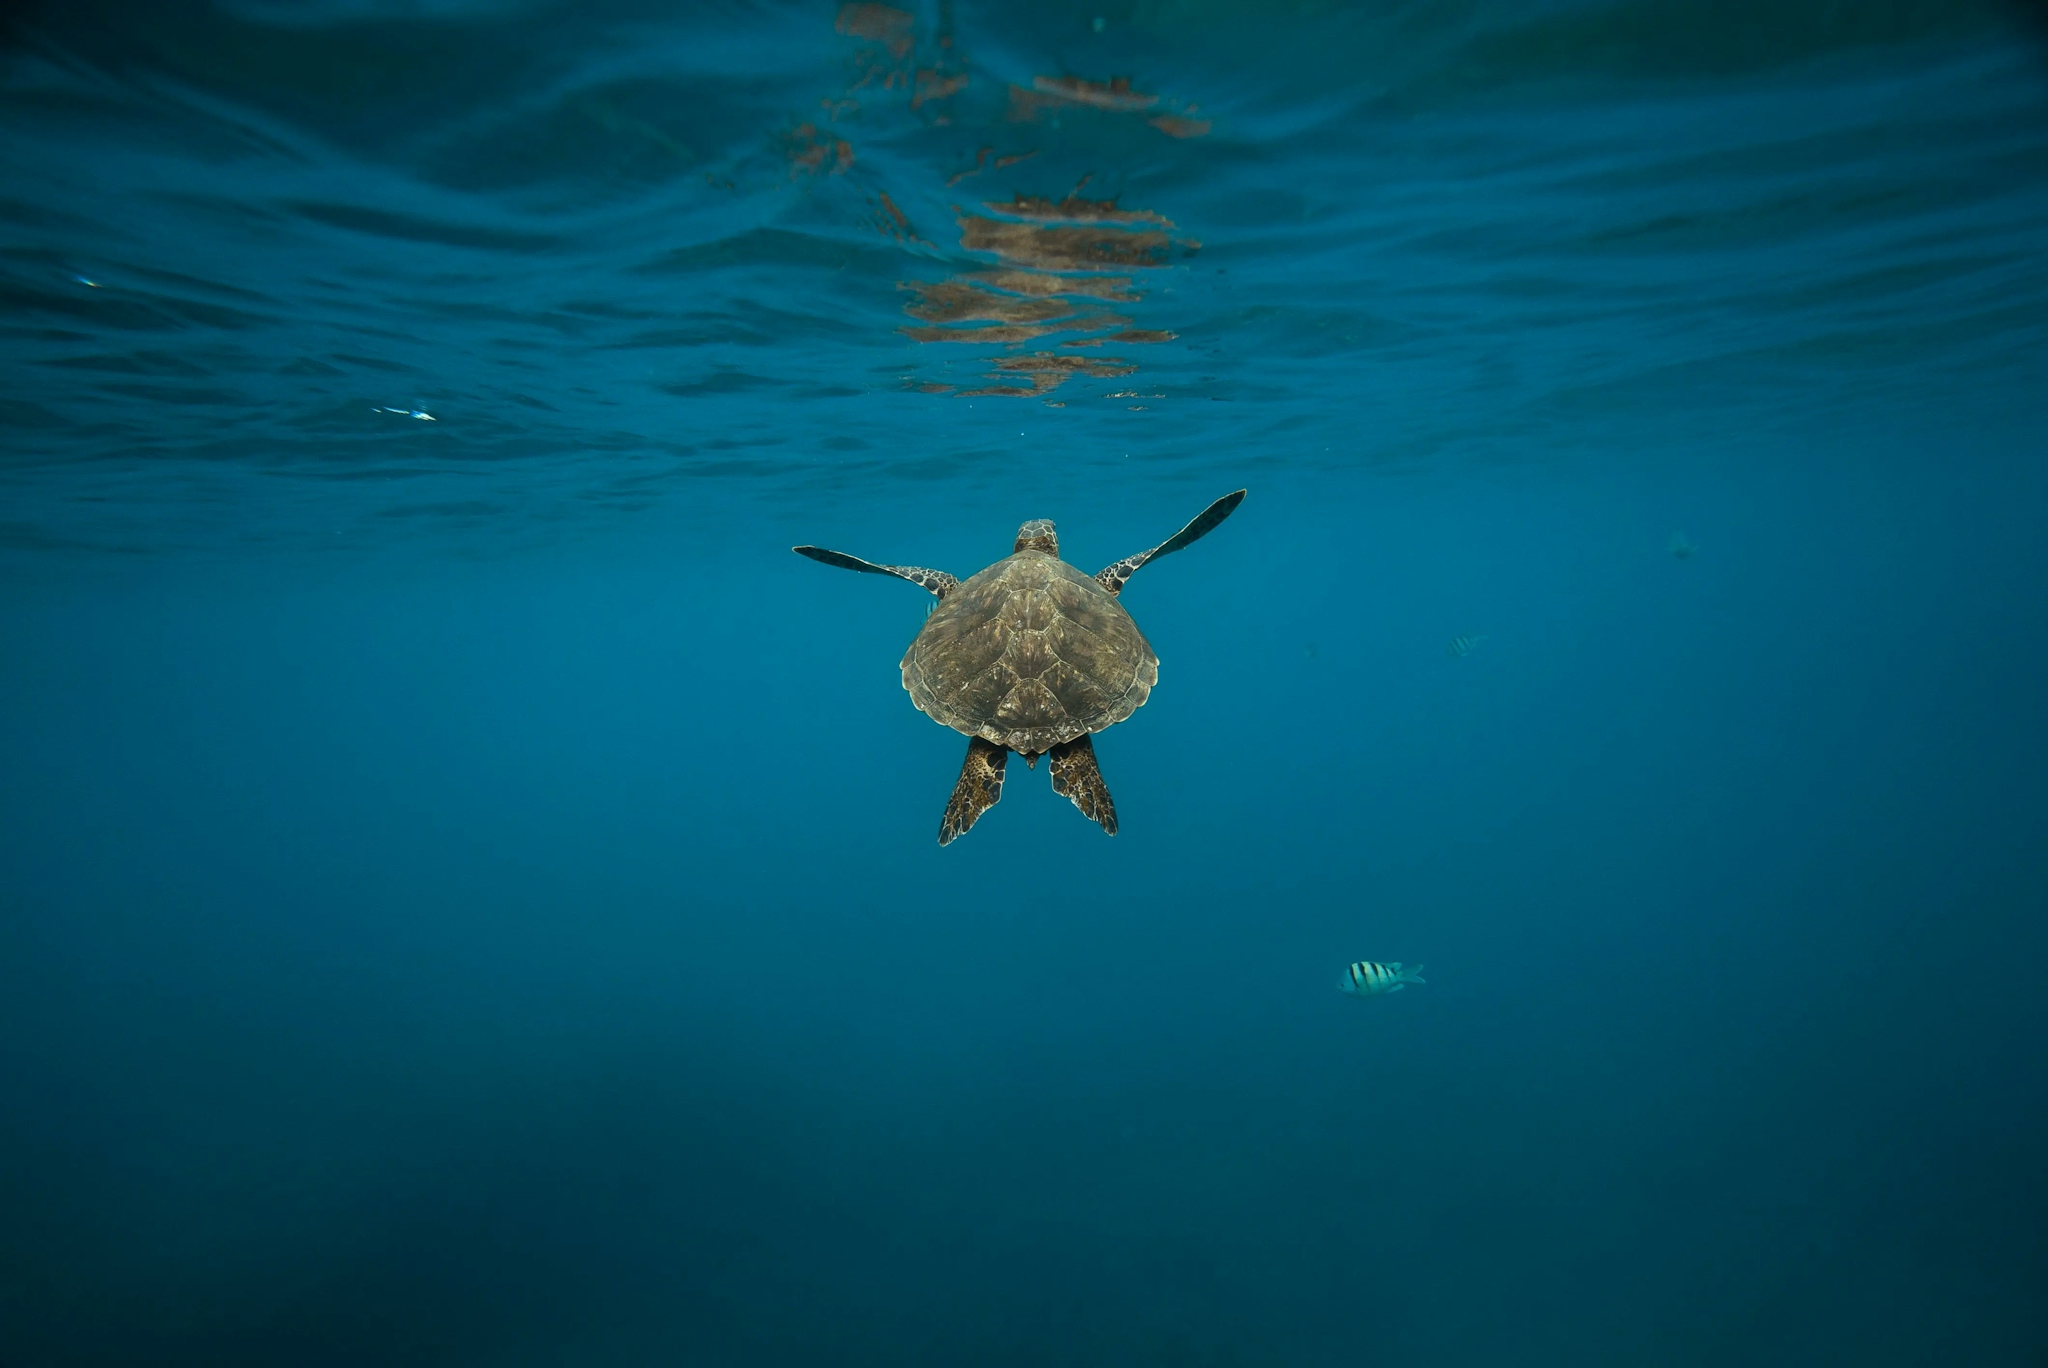 A Sea Turtle swimming